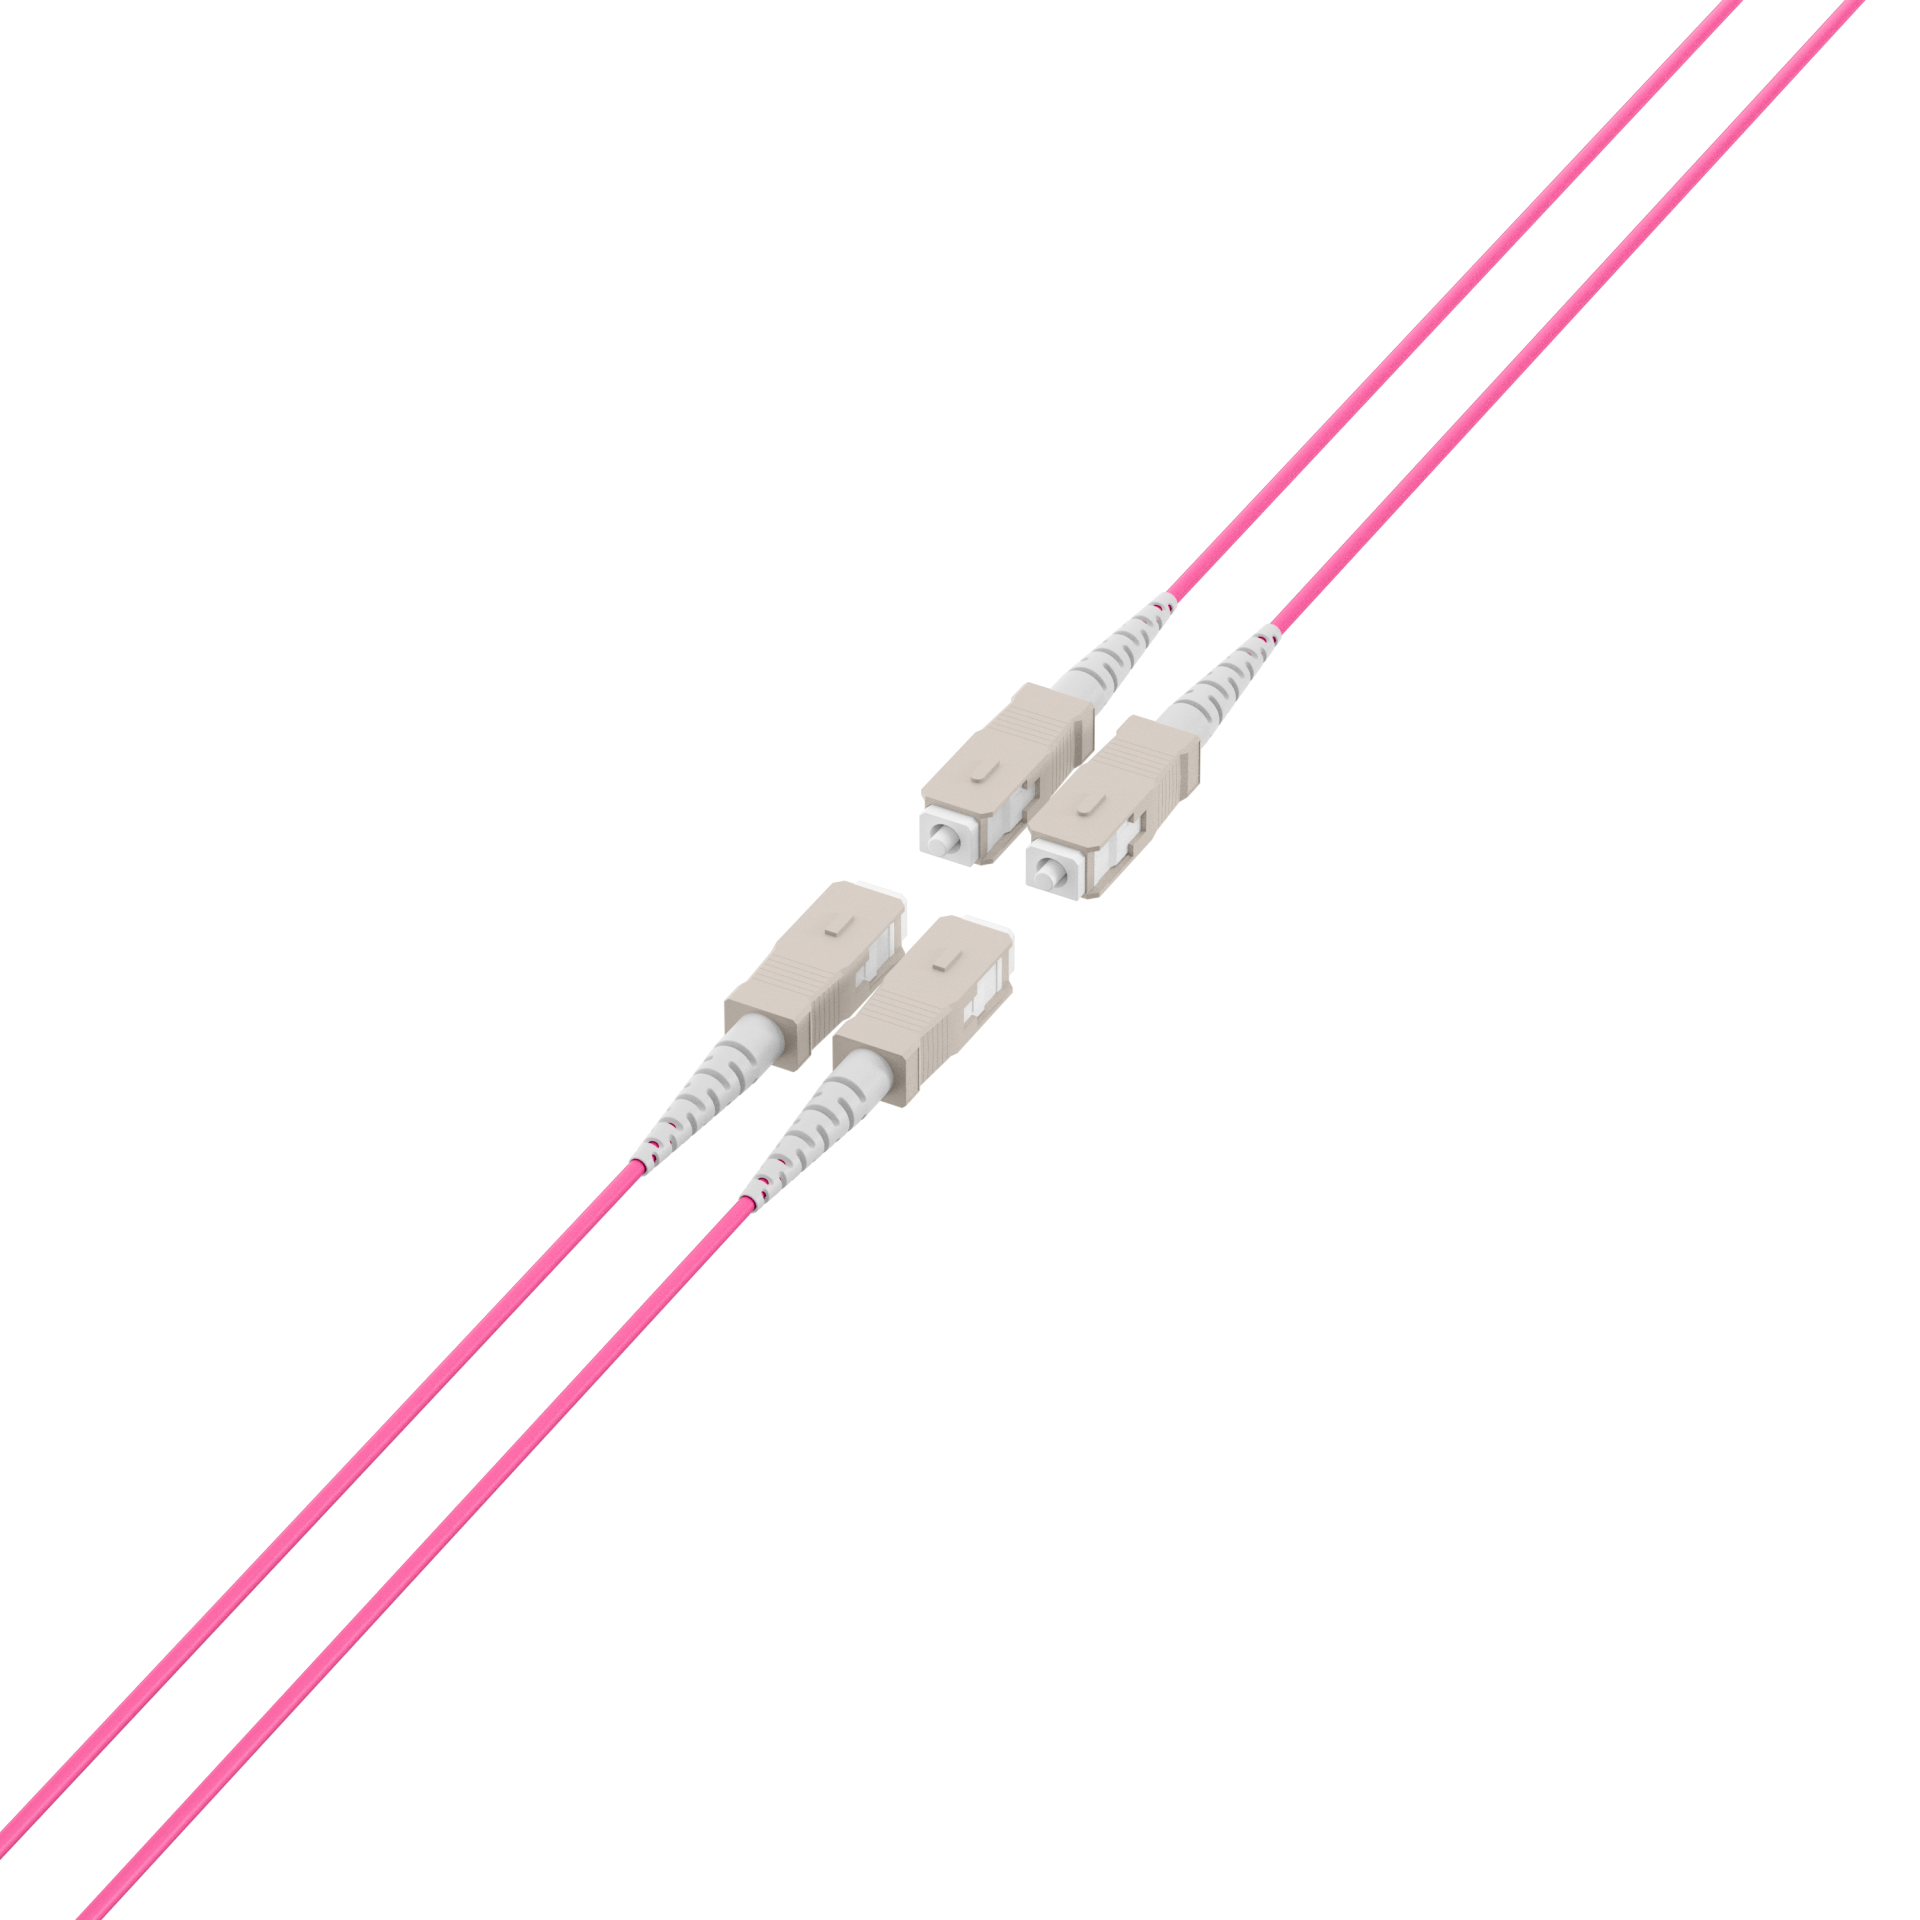 Trunk cable U-DQ(ZN)BH OM4 4G (1x4) SC-SC,80m Dca LSZH